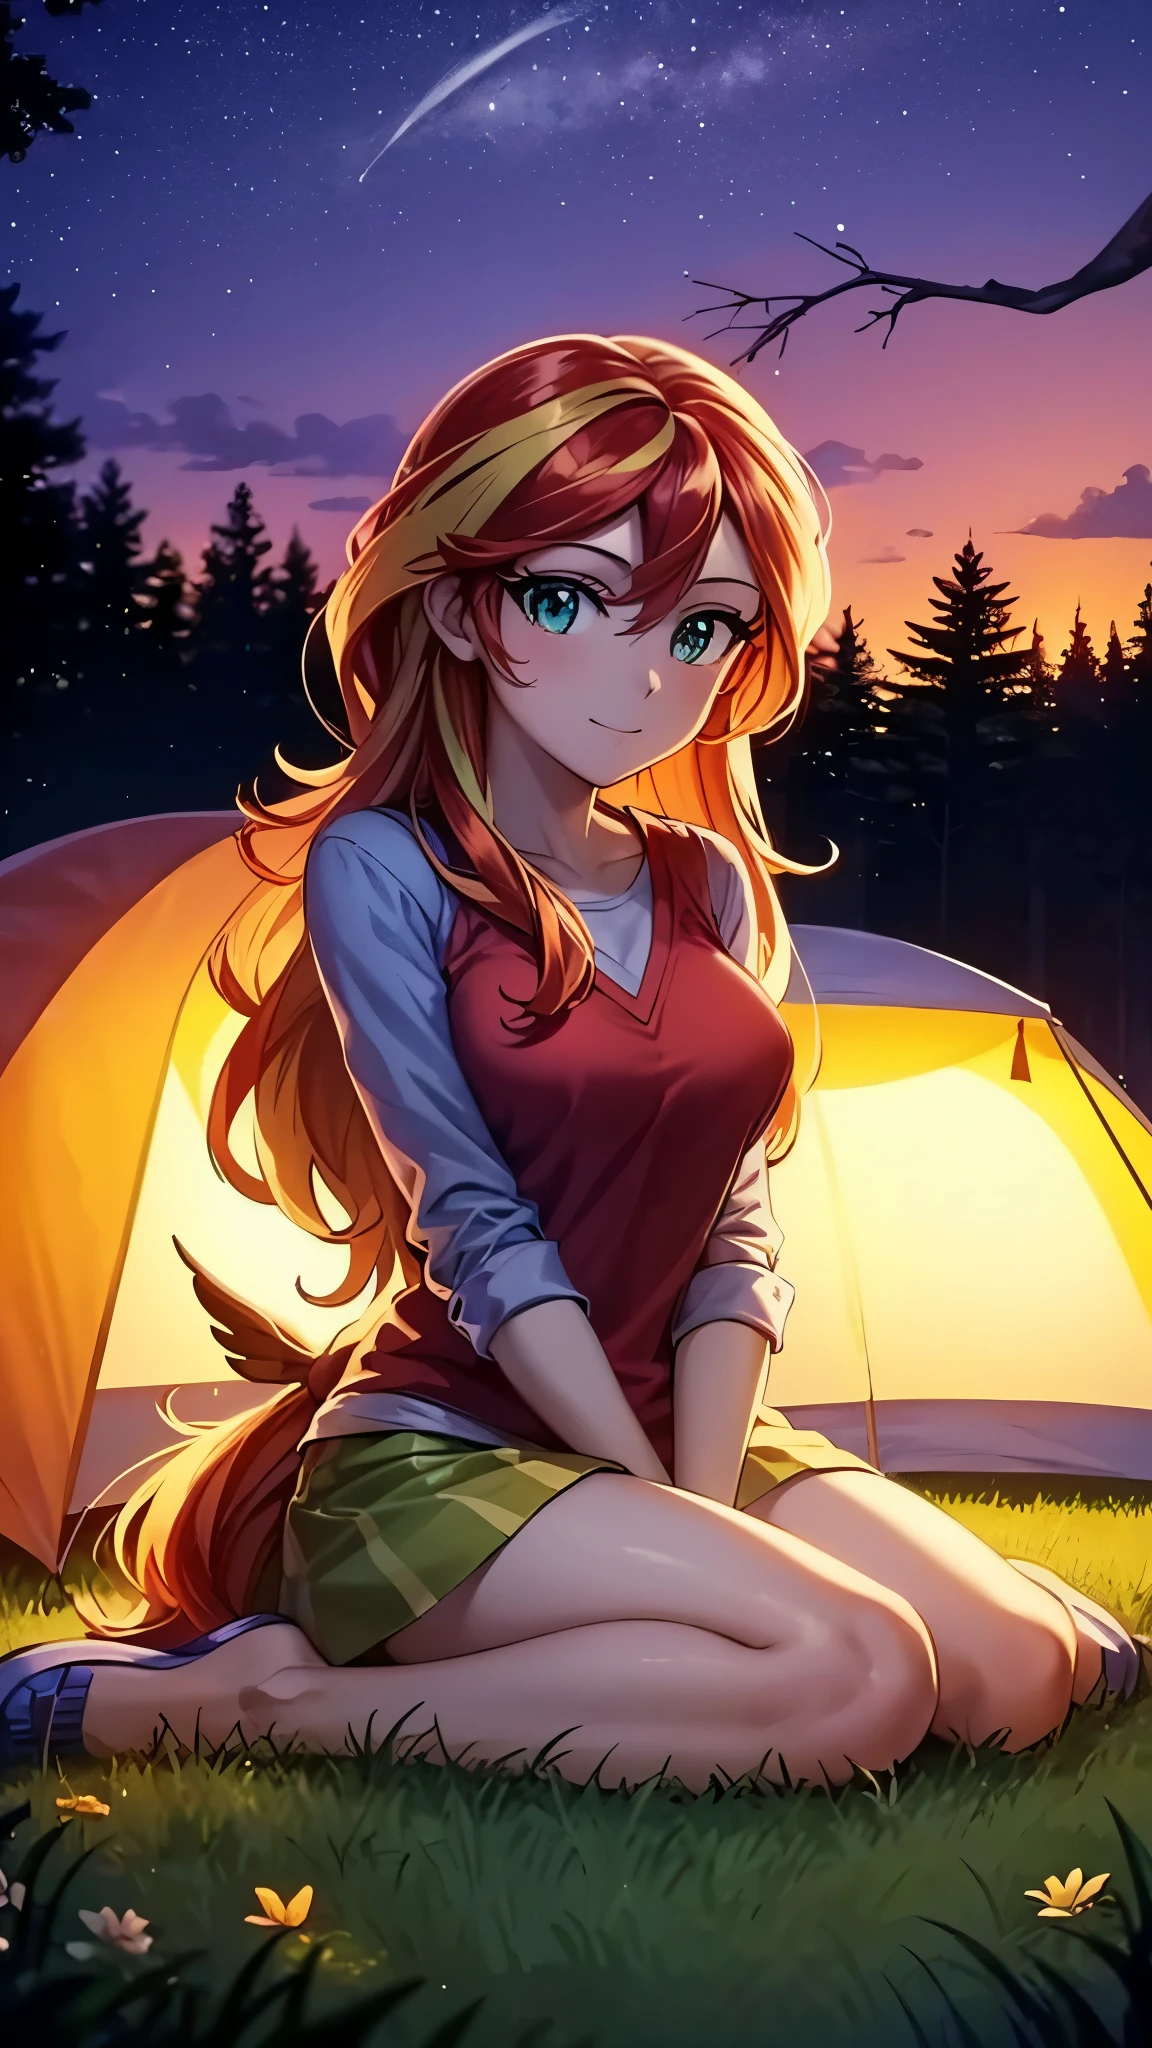 coucher du soleil scintillant, camping, assis dans une tente dans la forêt la nuit